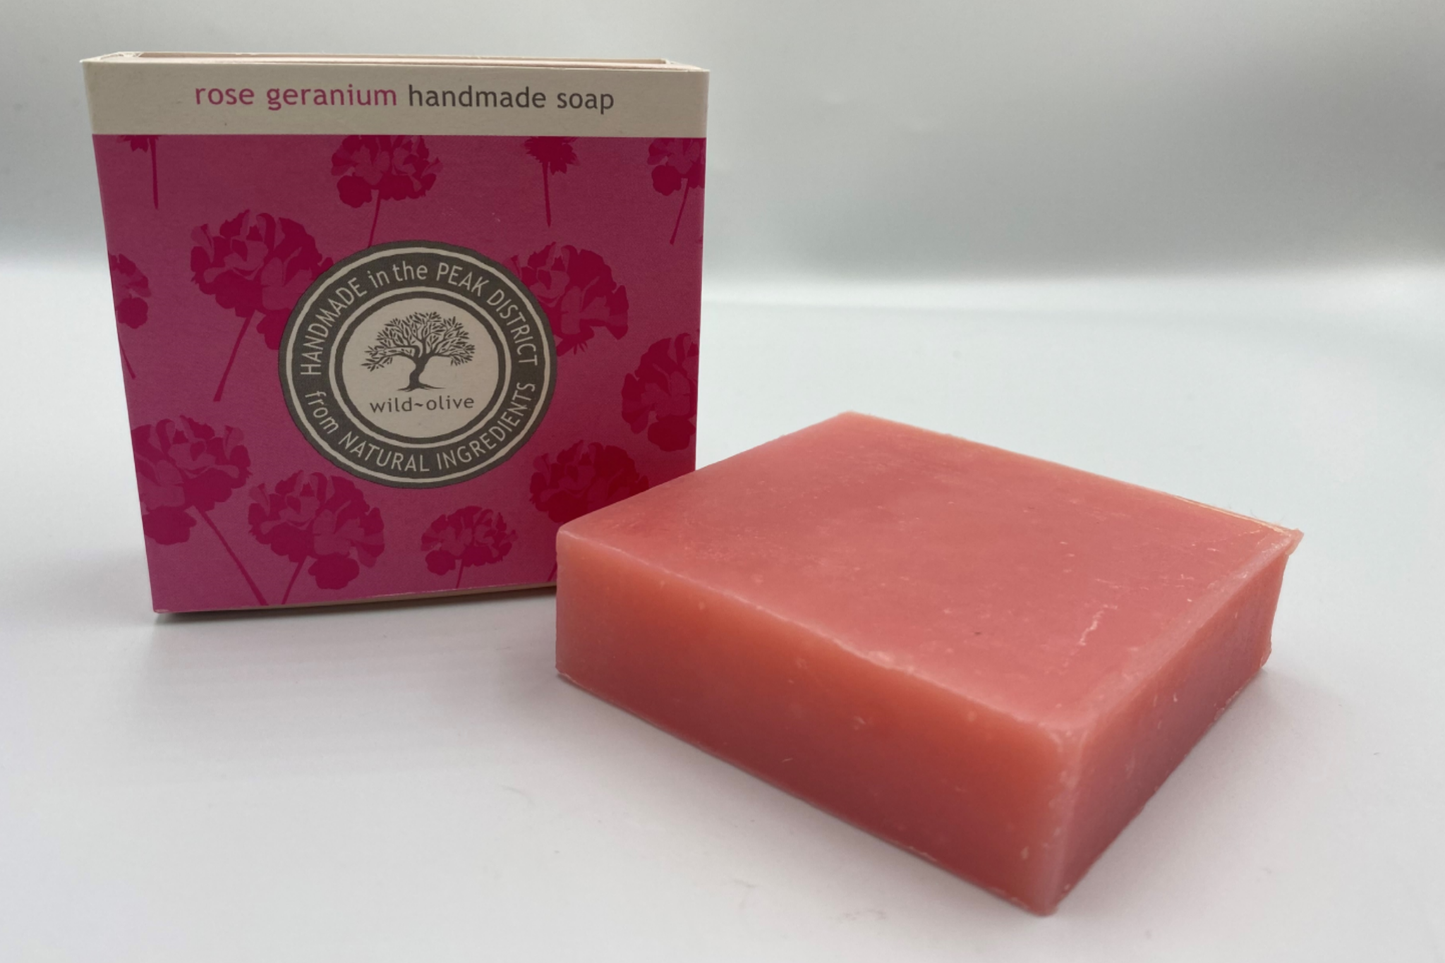 Handmade Rose Geranium soap